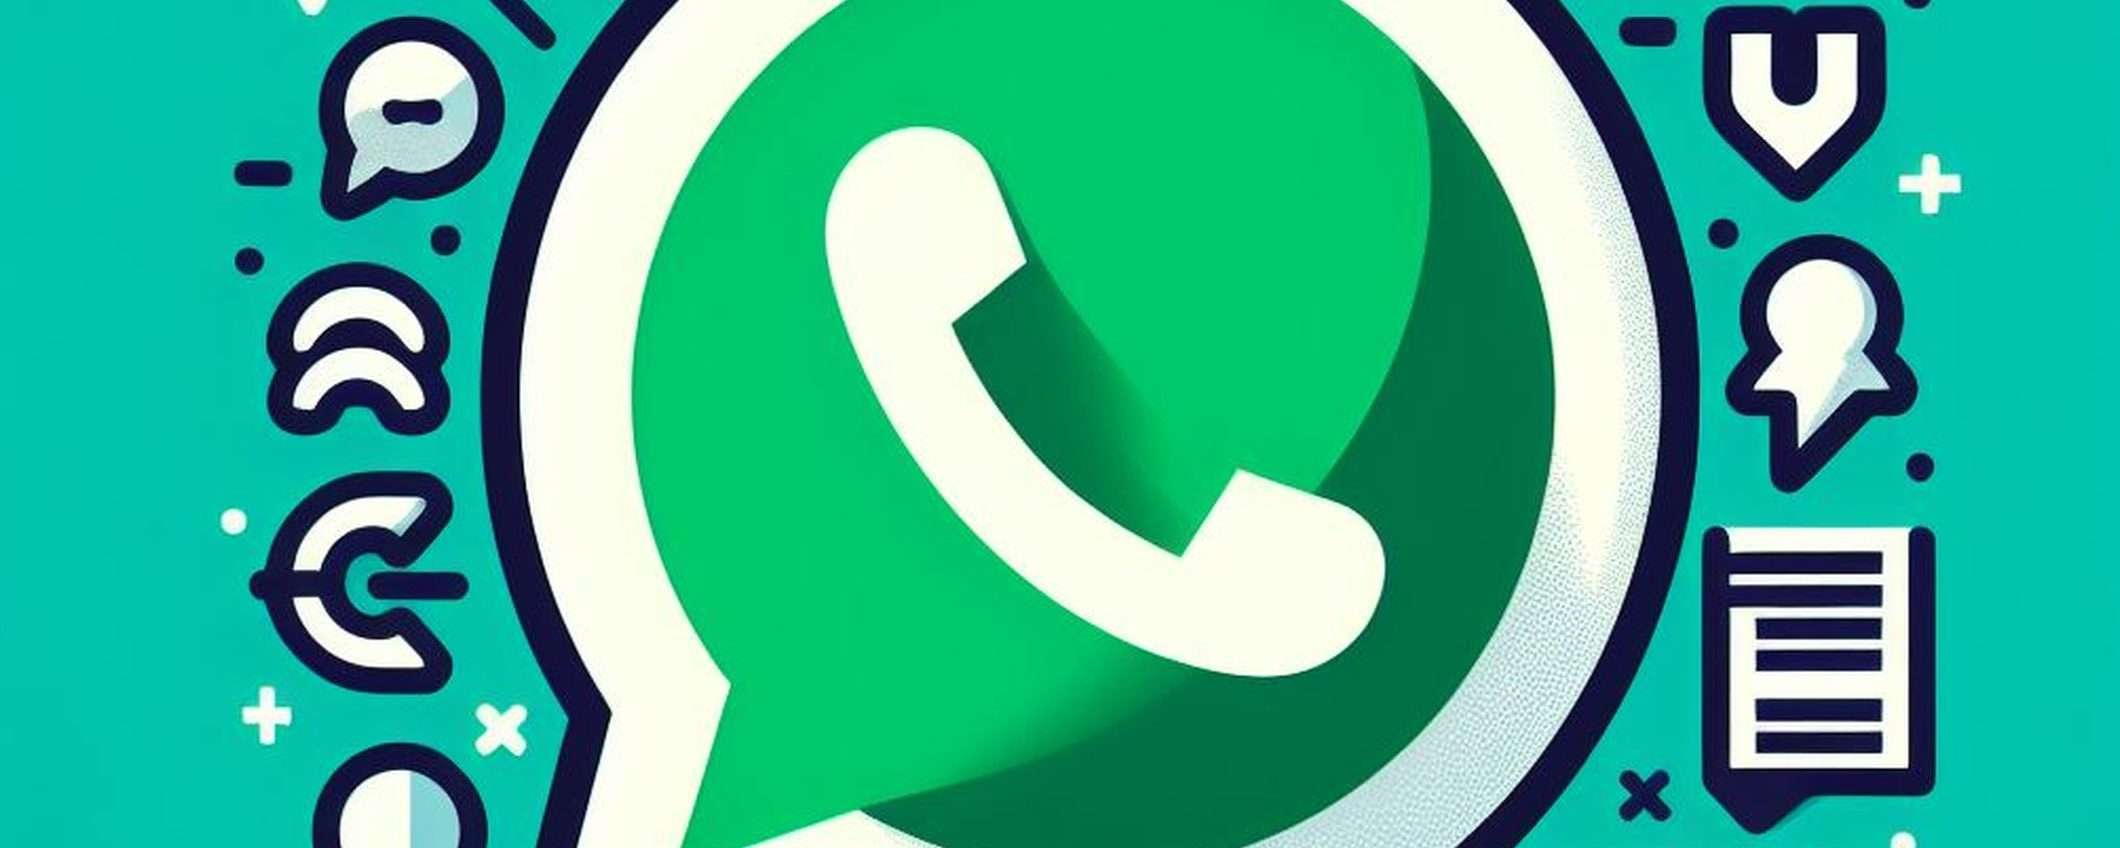 WhatsApp permette di allegare note ai contatti